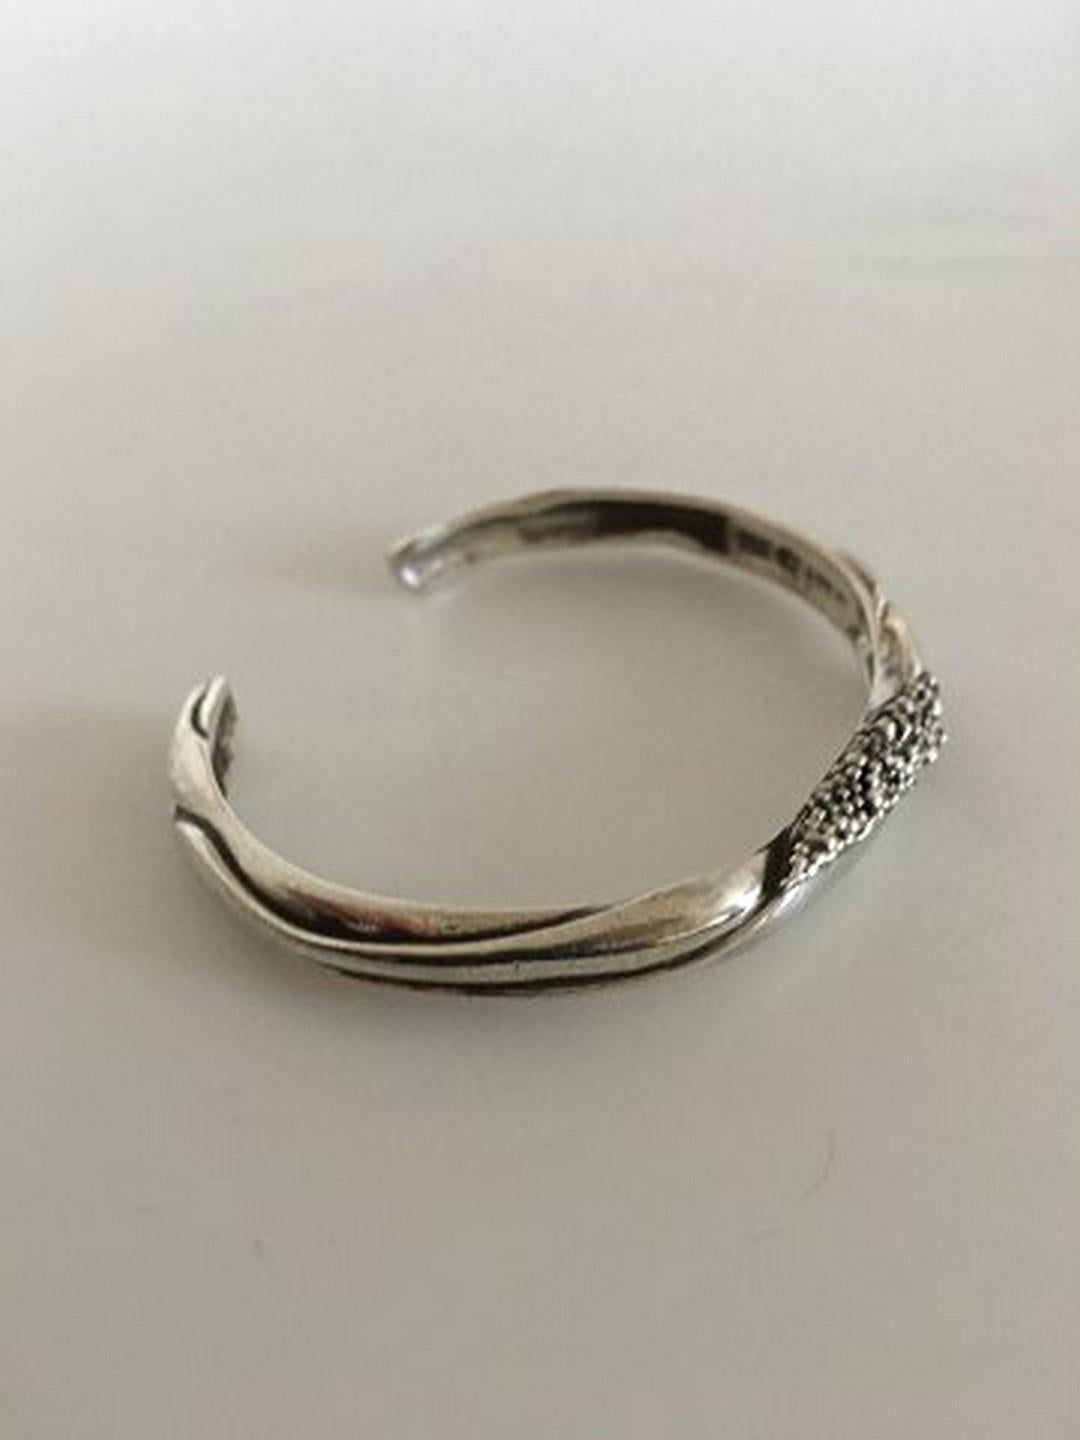 Modern Georg Jensen Sterling Silver Cuff/Bracelet #362 by Ole Kortzau For Sale